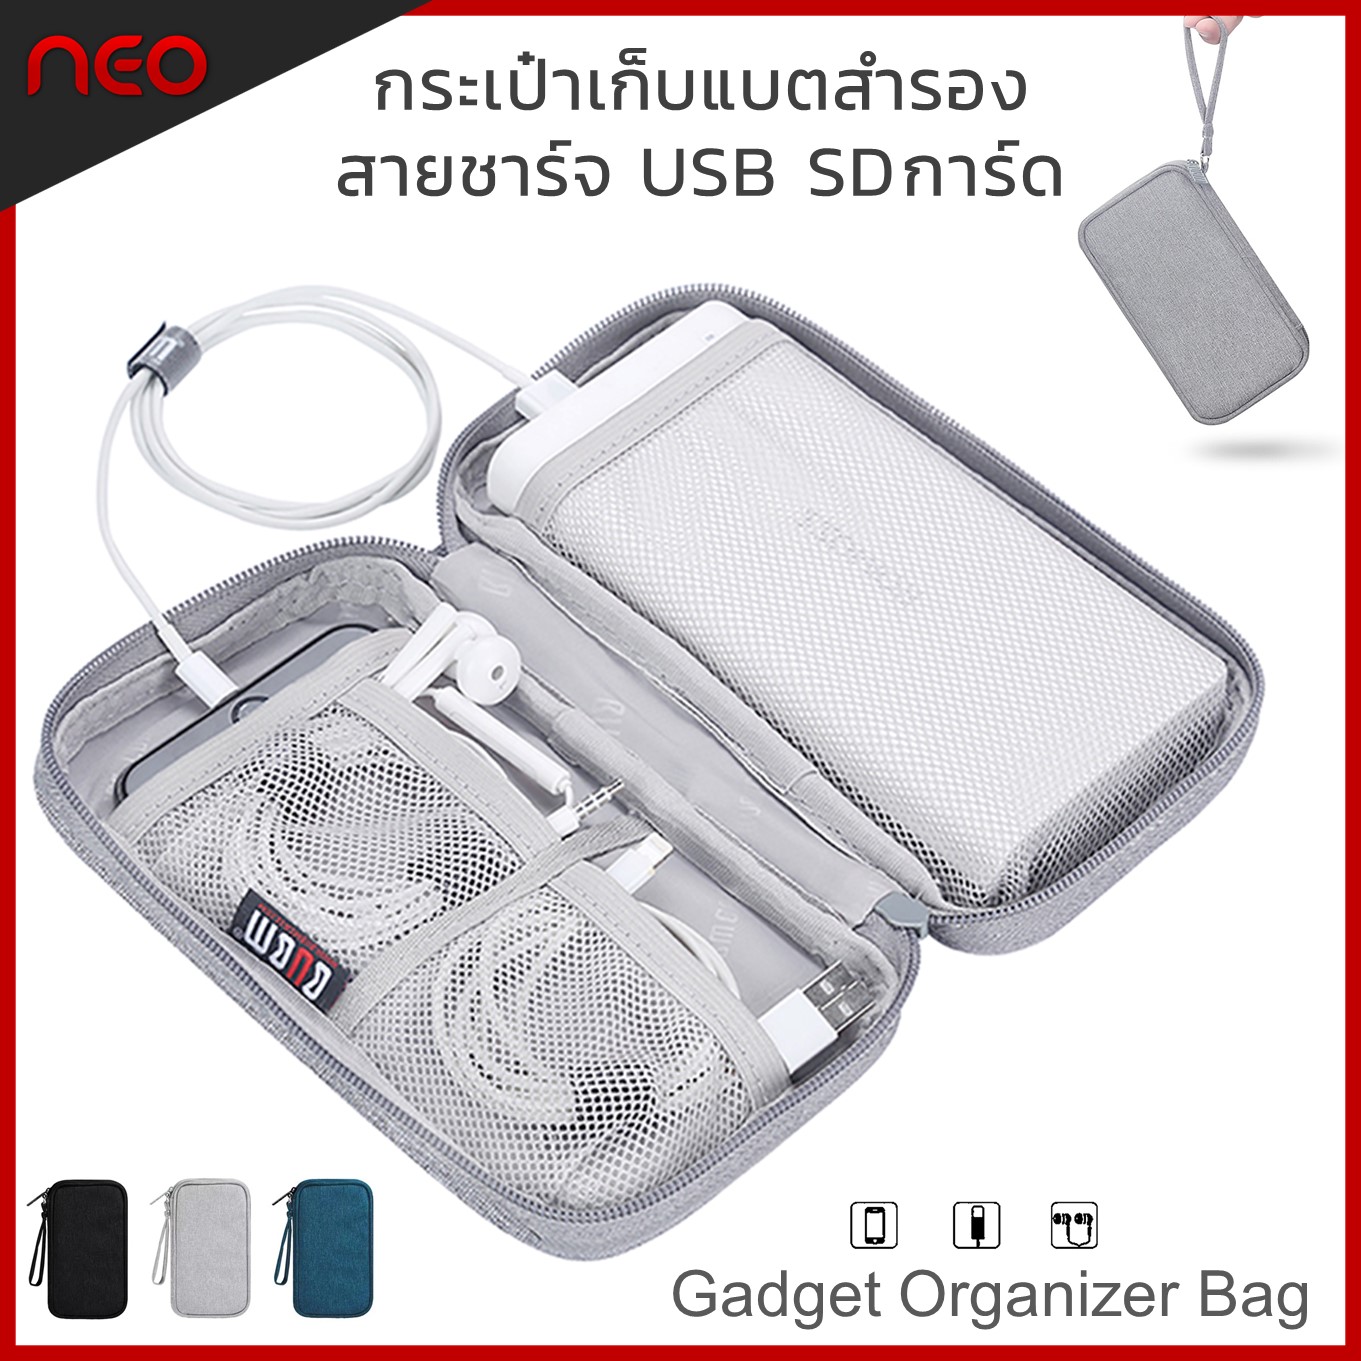 กระเป๋าเก็บแบตสำรอง สายชาร์จ USB SD การ์ด โทรศัพท์มือถือ หูฟัง เคสแบตสำรอง ซองมือถือ กระเป๋าจัดระเบียบเดินทาง Portable Case for Power bank Gadget Organizer Bag